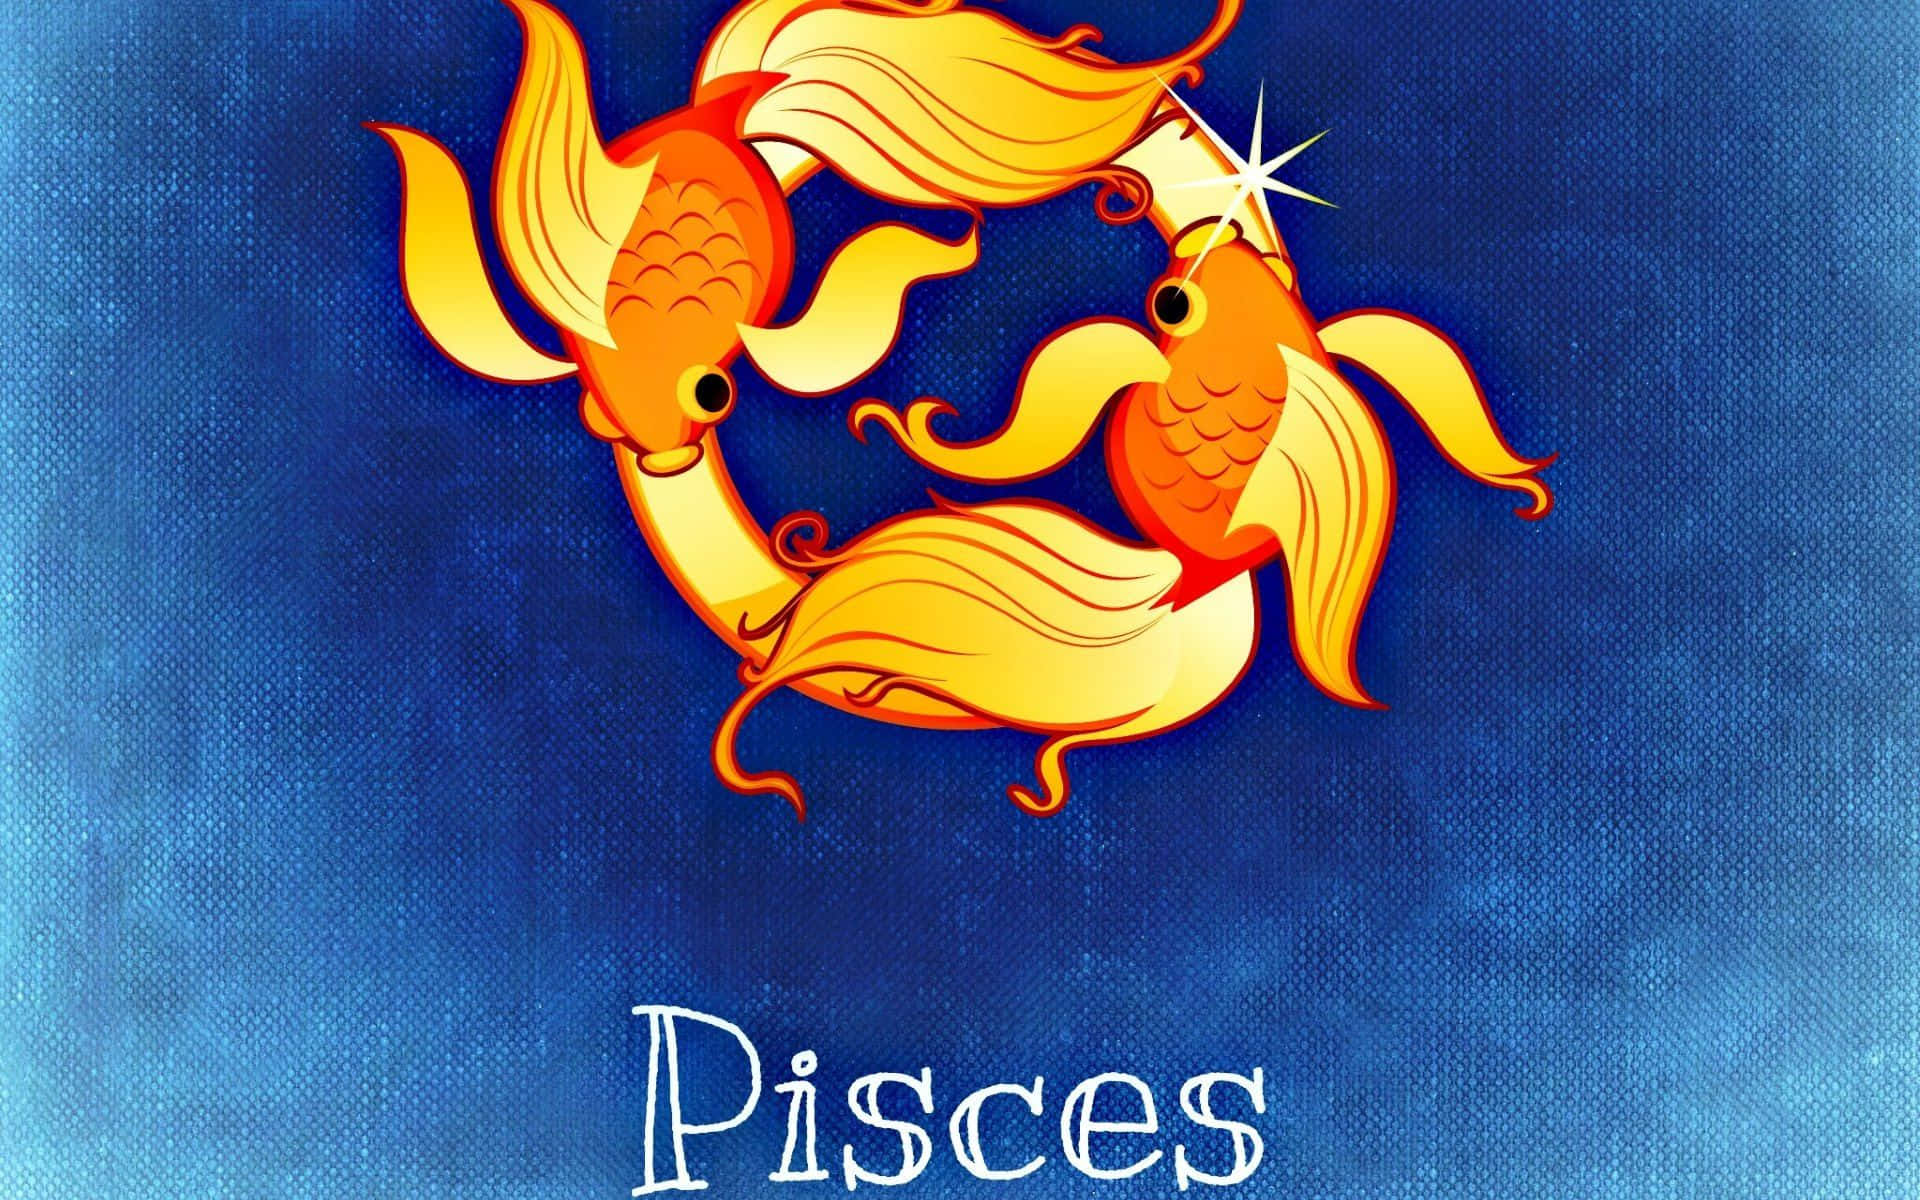 Swim through life with Pisces energy